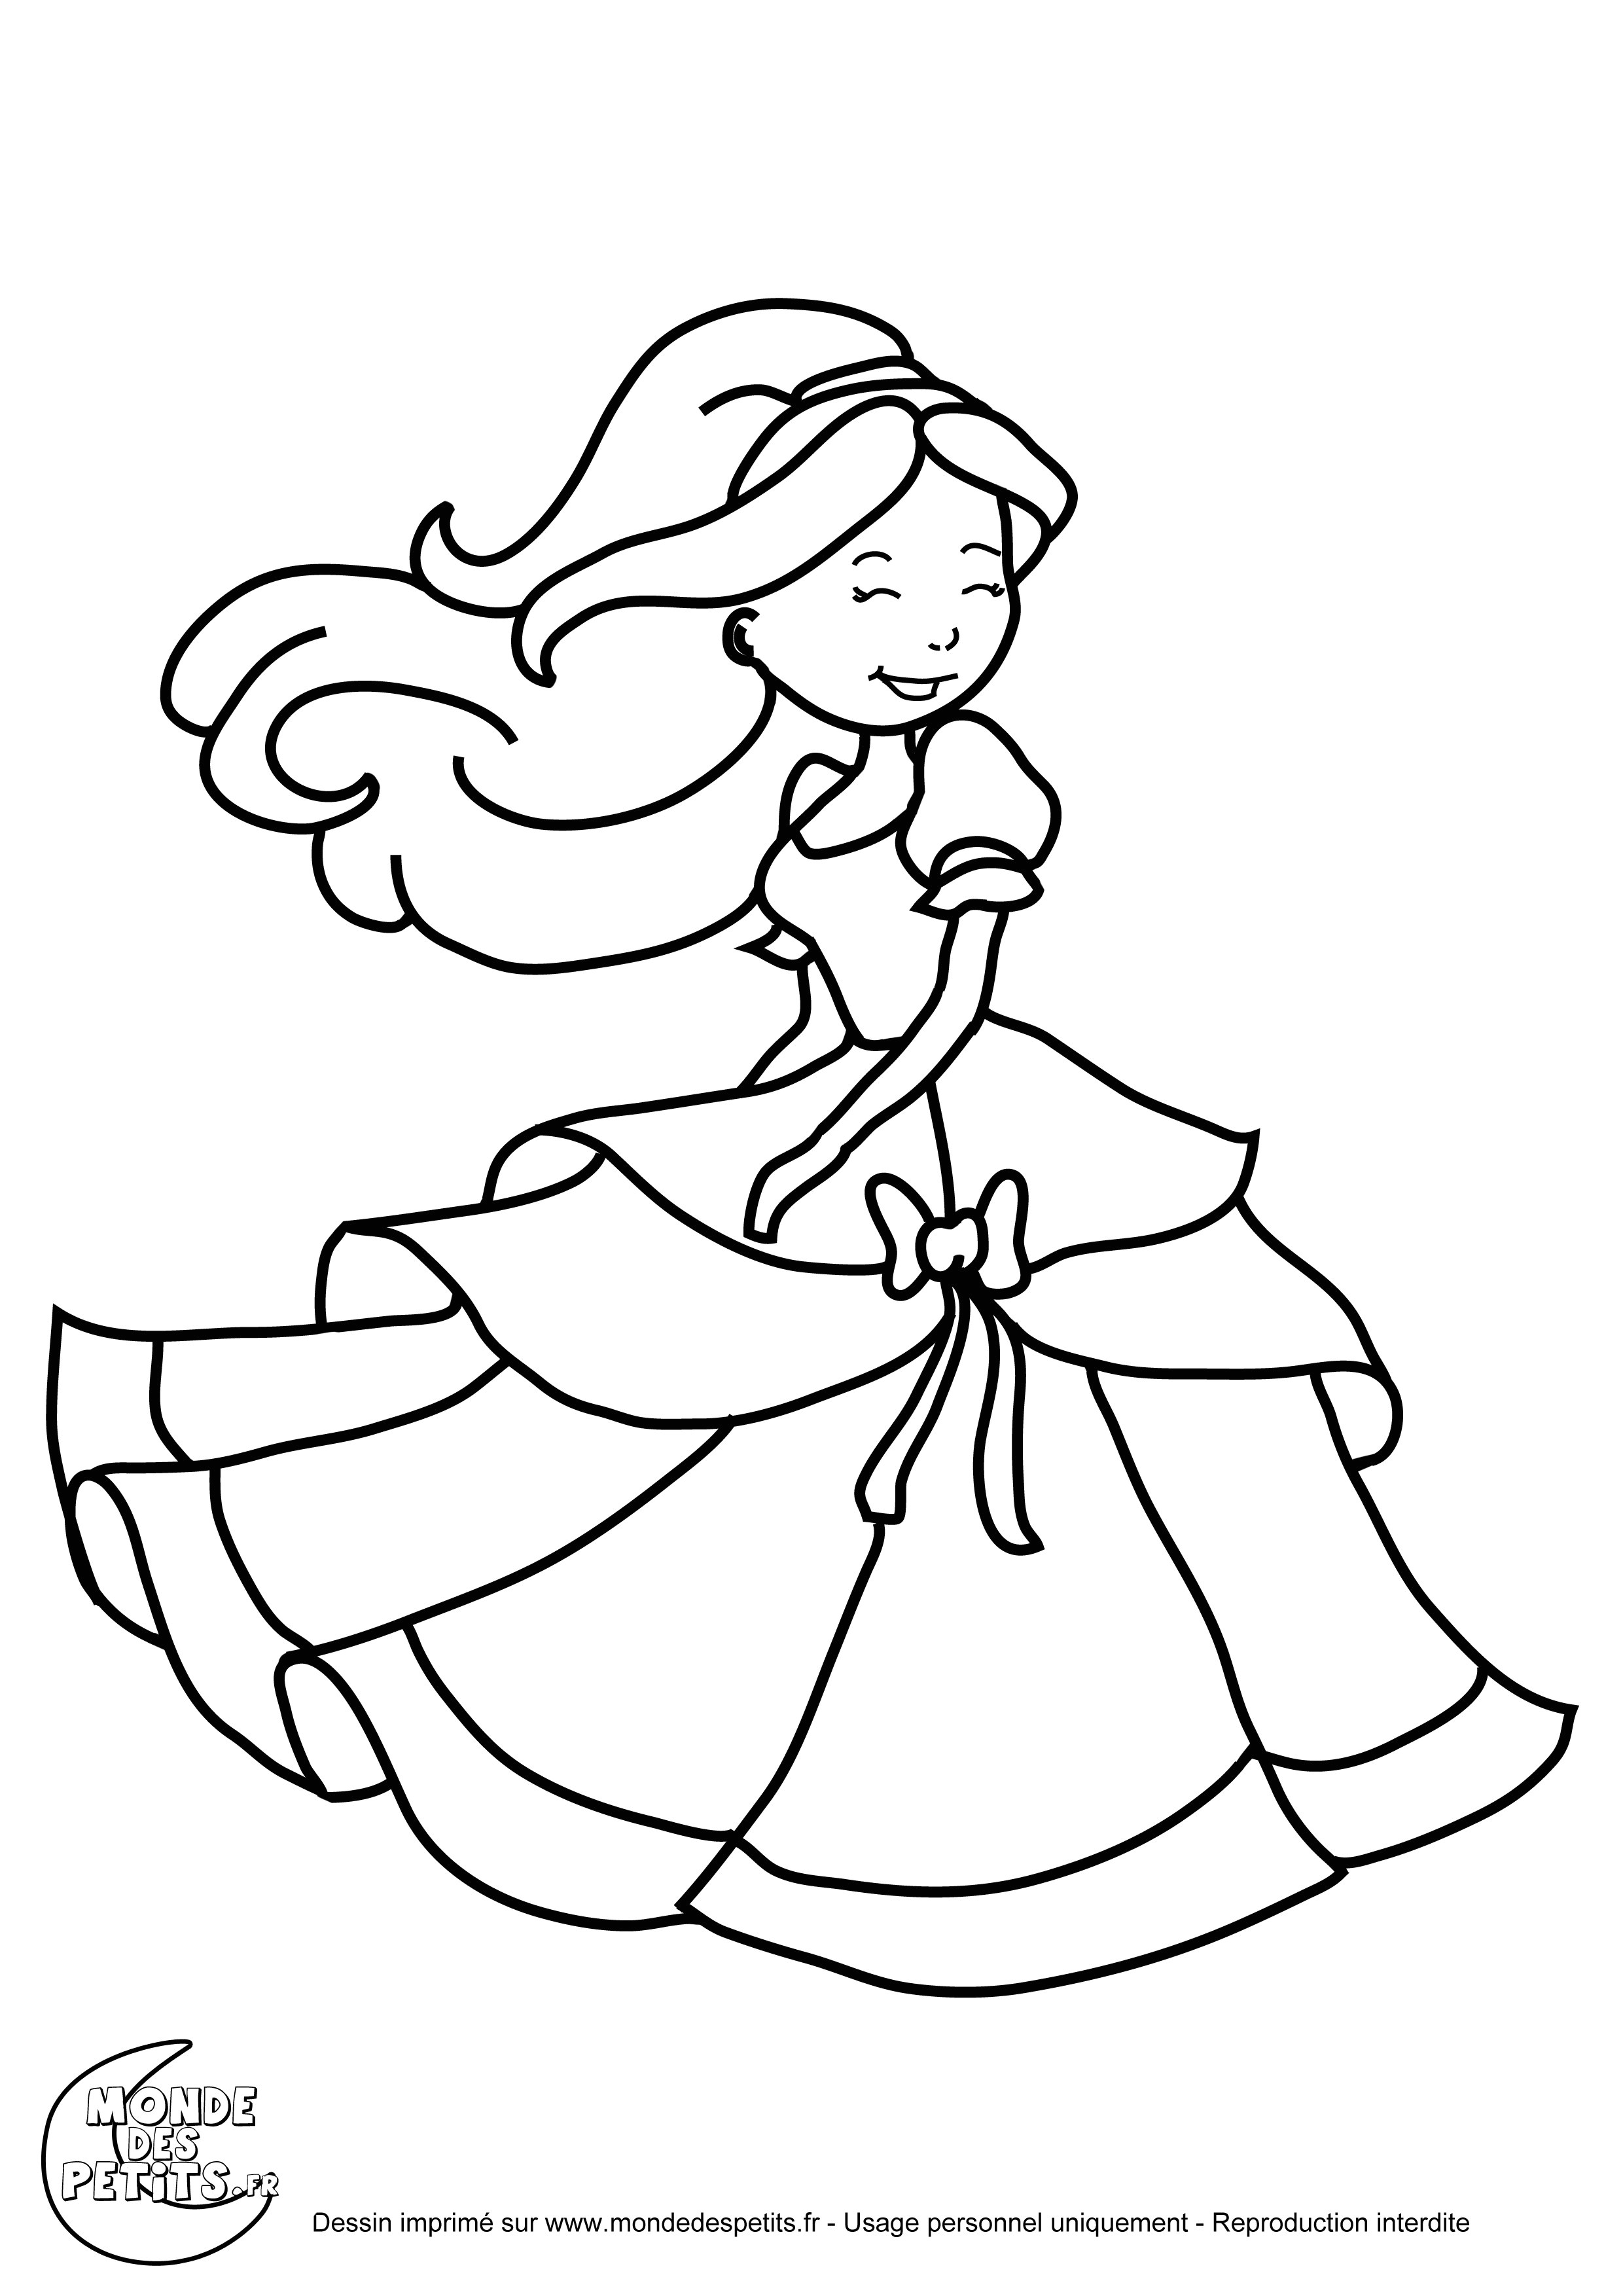 coloriage princesse tiana dessin c3 a0 l l l l l l l l l coloriage de princesse disney c3 a0 imprimer gratuit